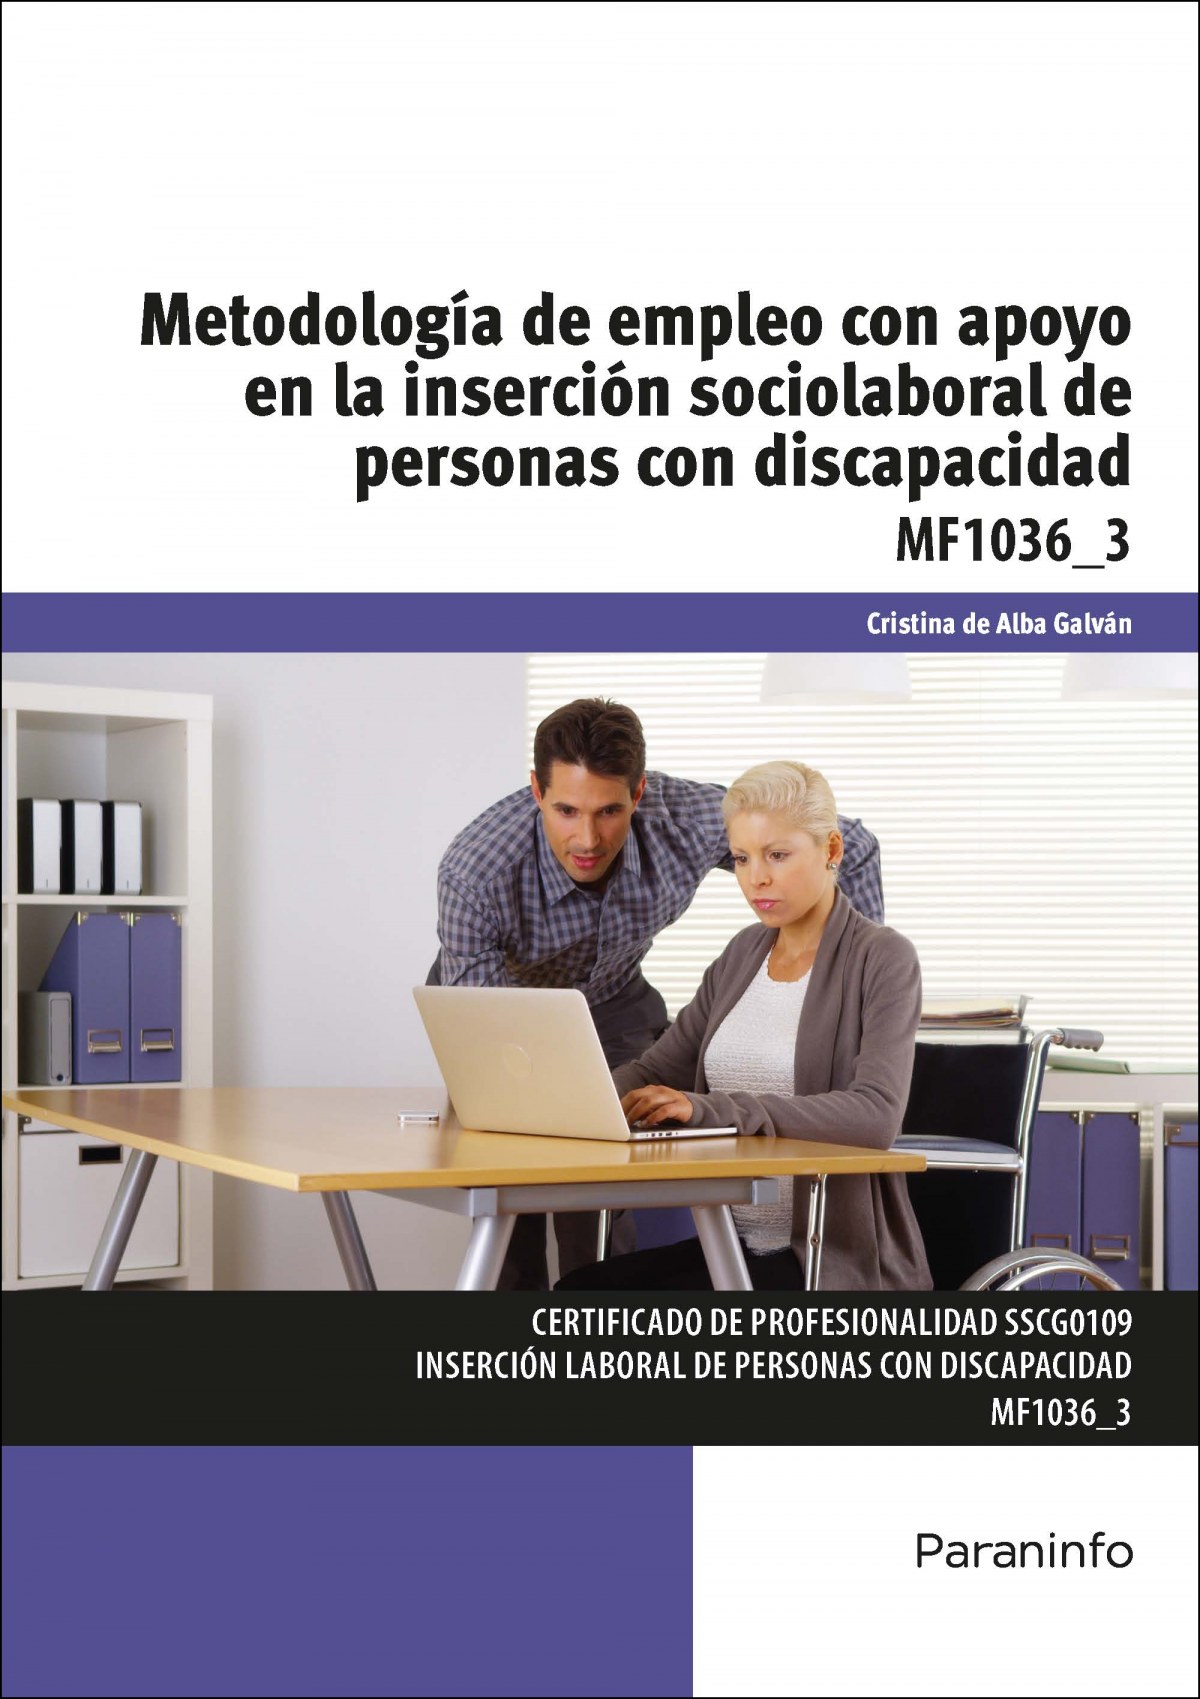 Metodología empleo con apoyo inserción sociolaboral personas con discapacidad